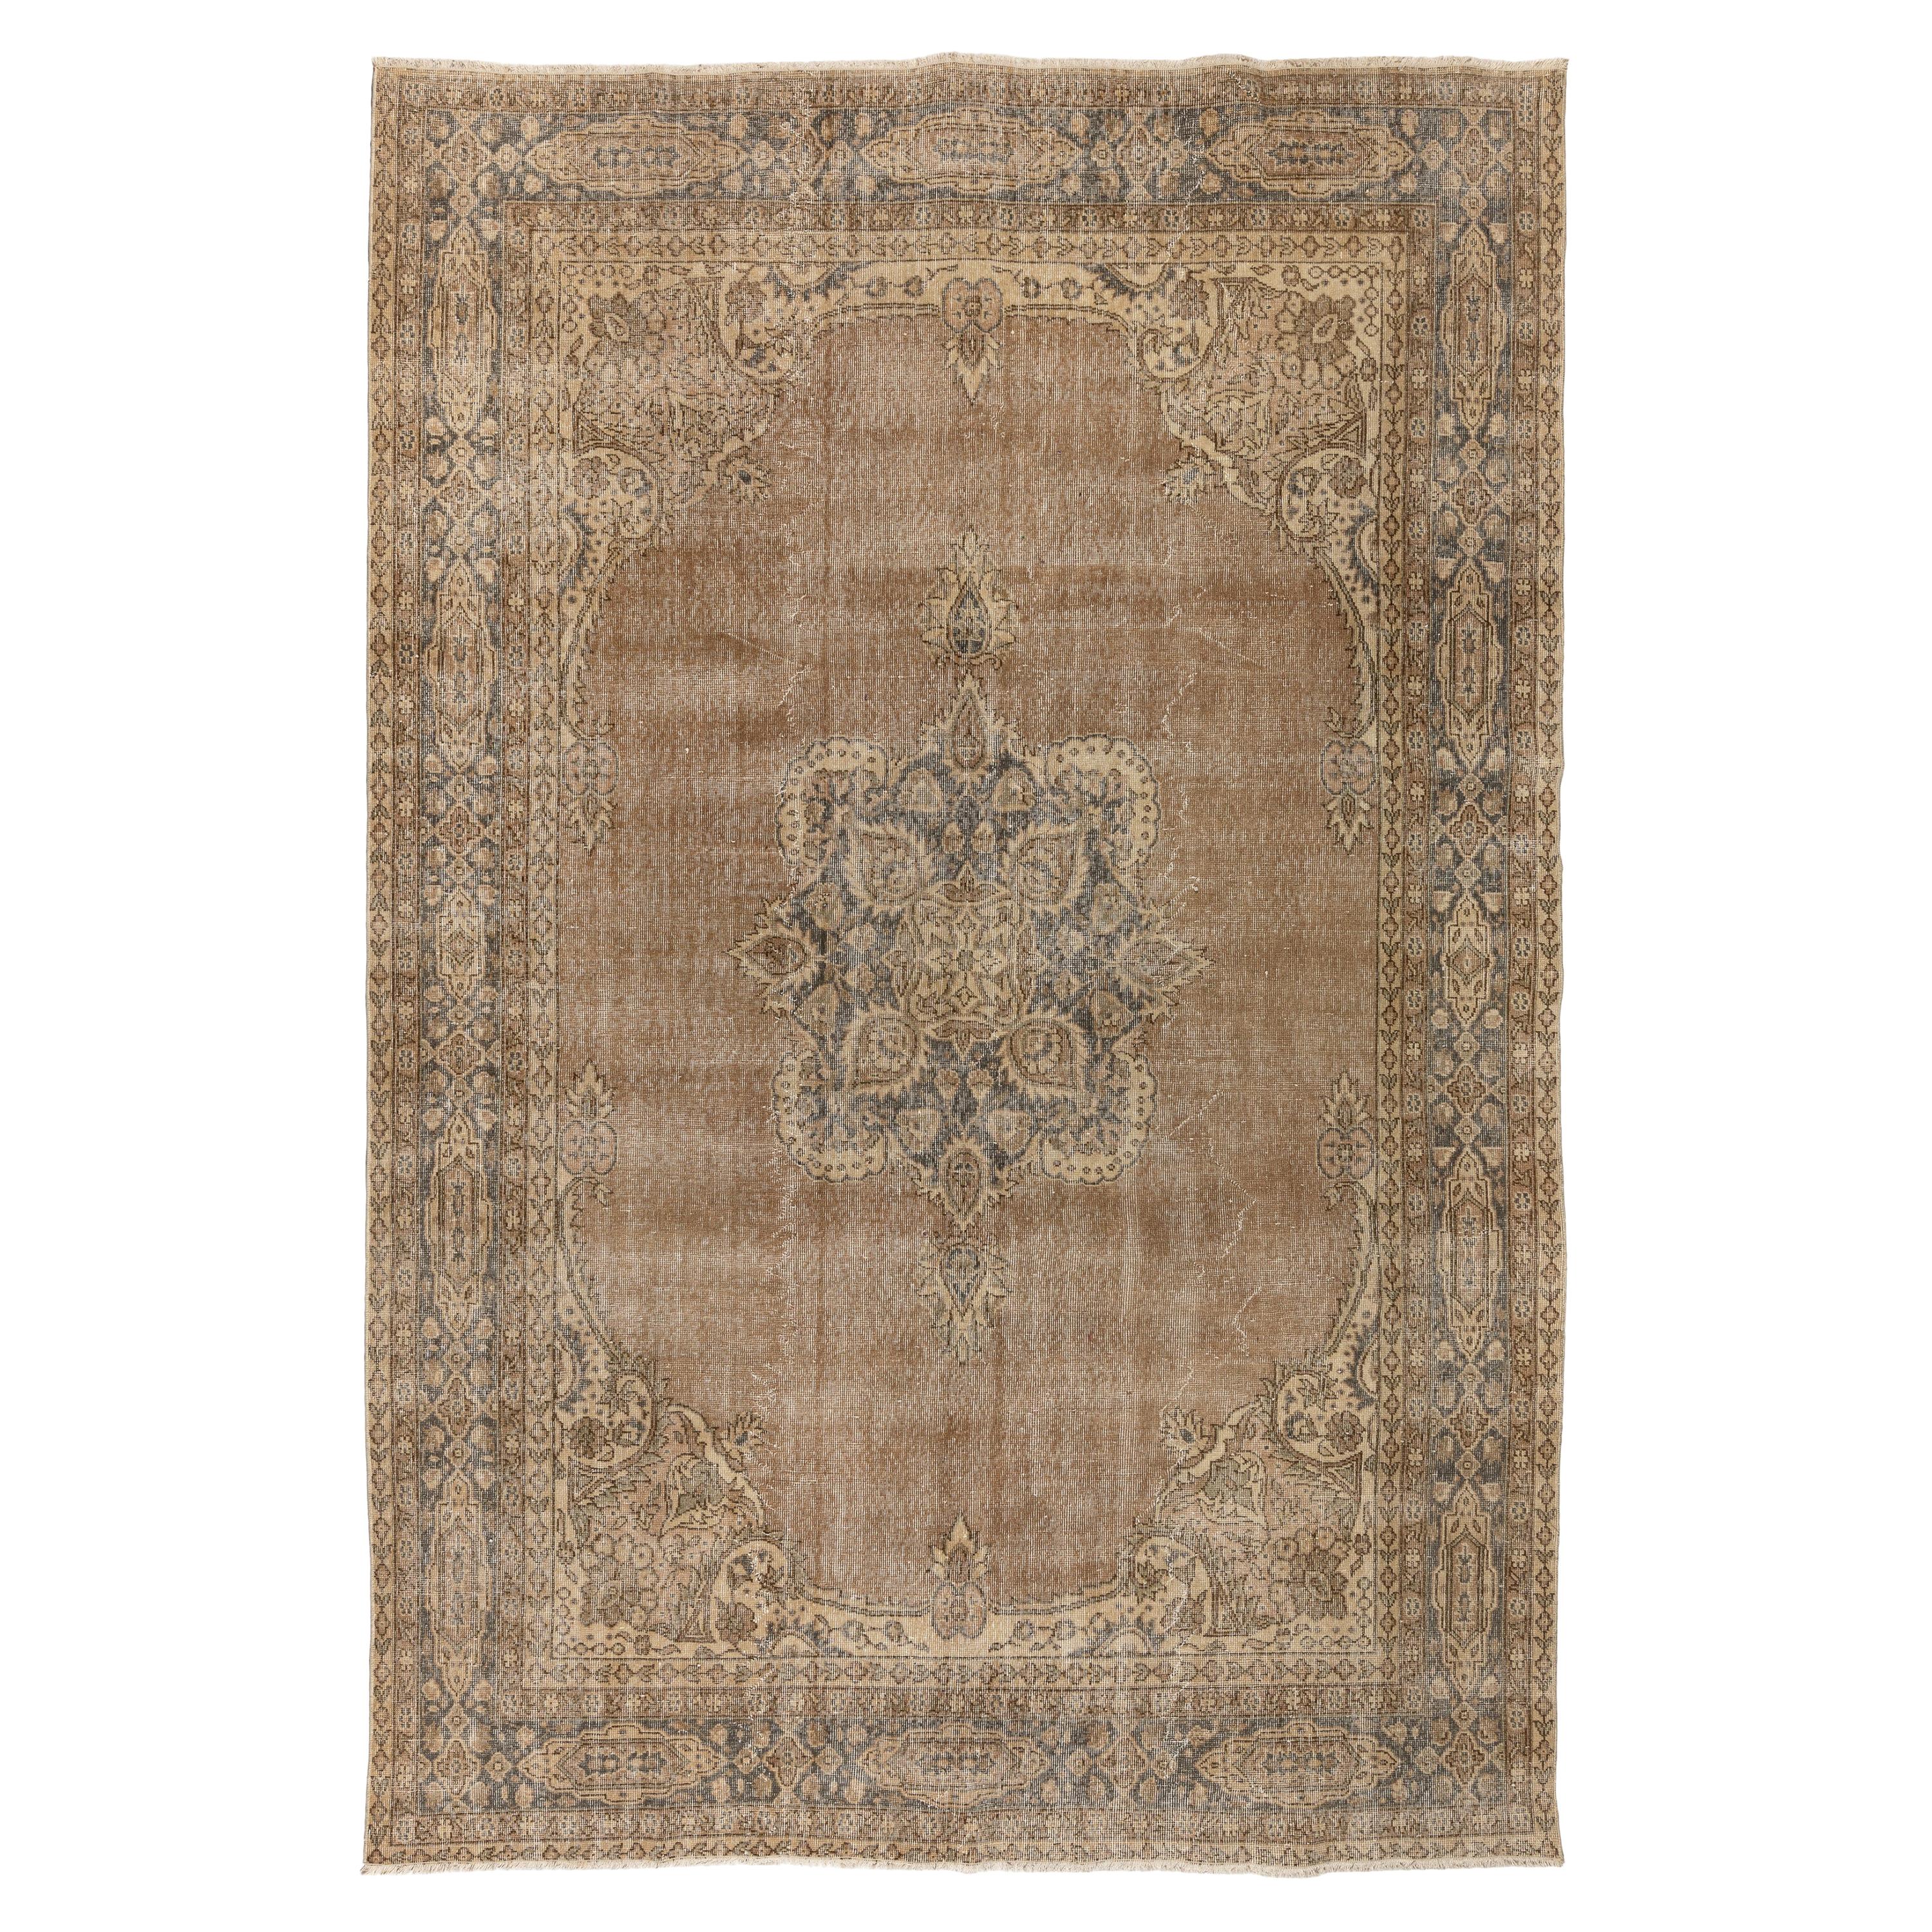 7.6x10,5 Ft türkischer Vintage-Teppich. Bodenbeläge aus Wolle. Orientter Teppich. 